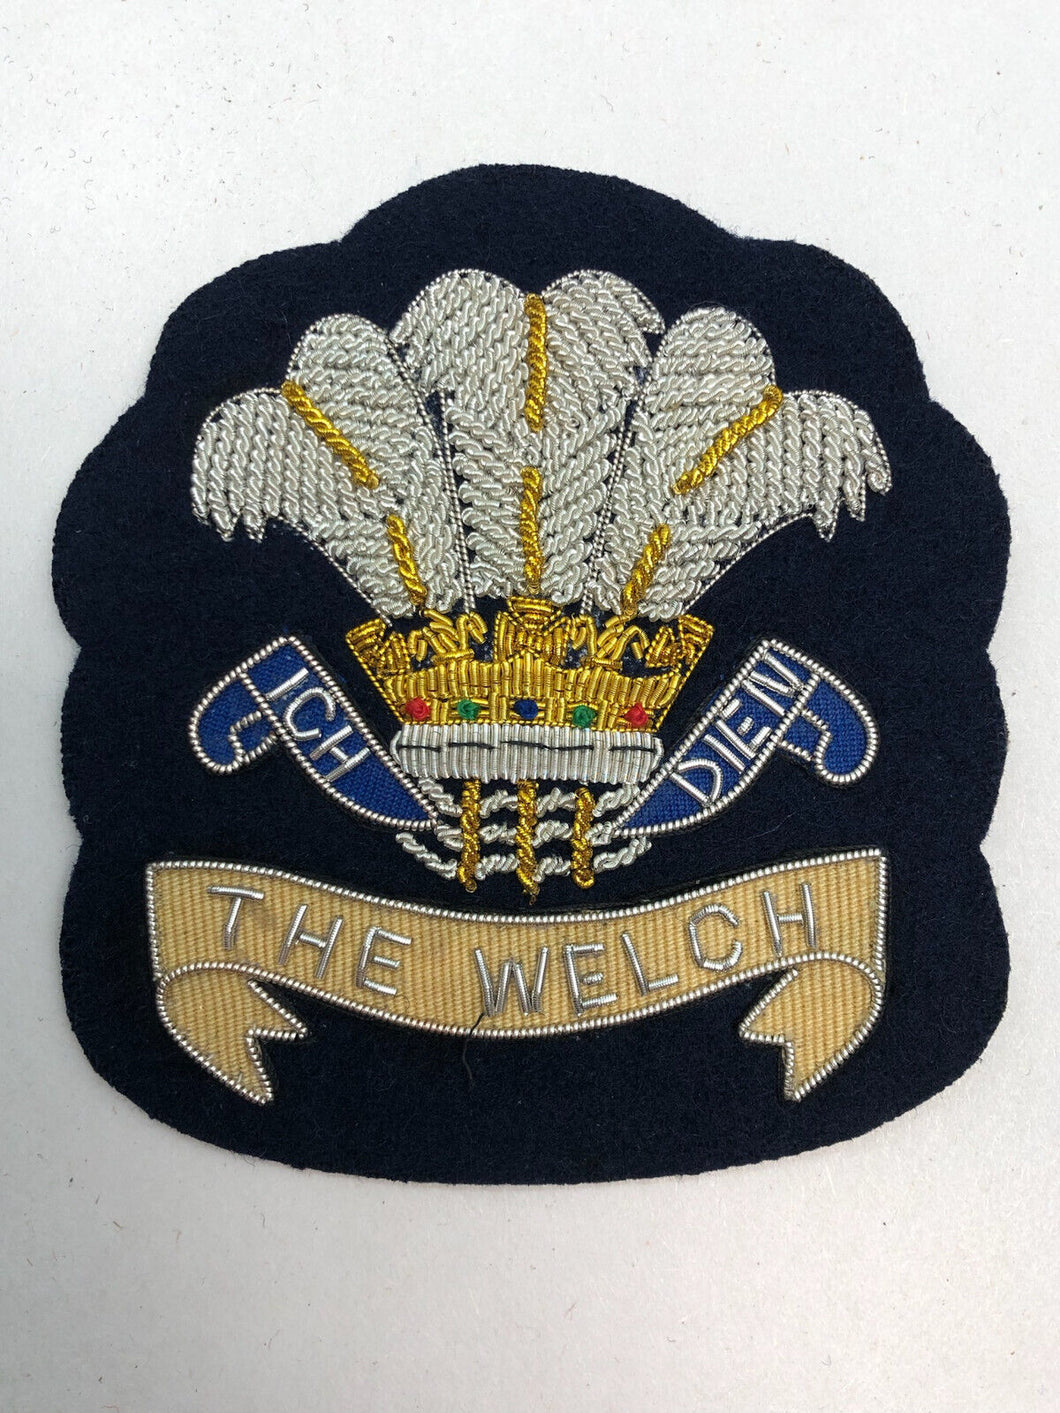 British Army Bullion Embroidered Blazer Badge - The Welch Regiment